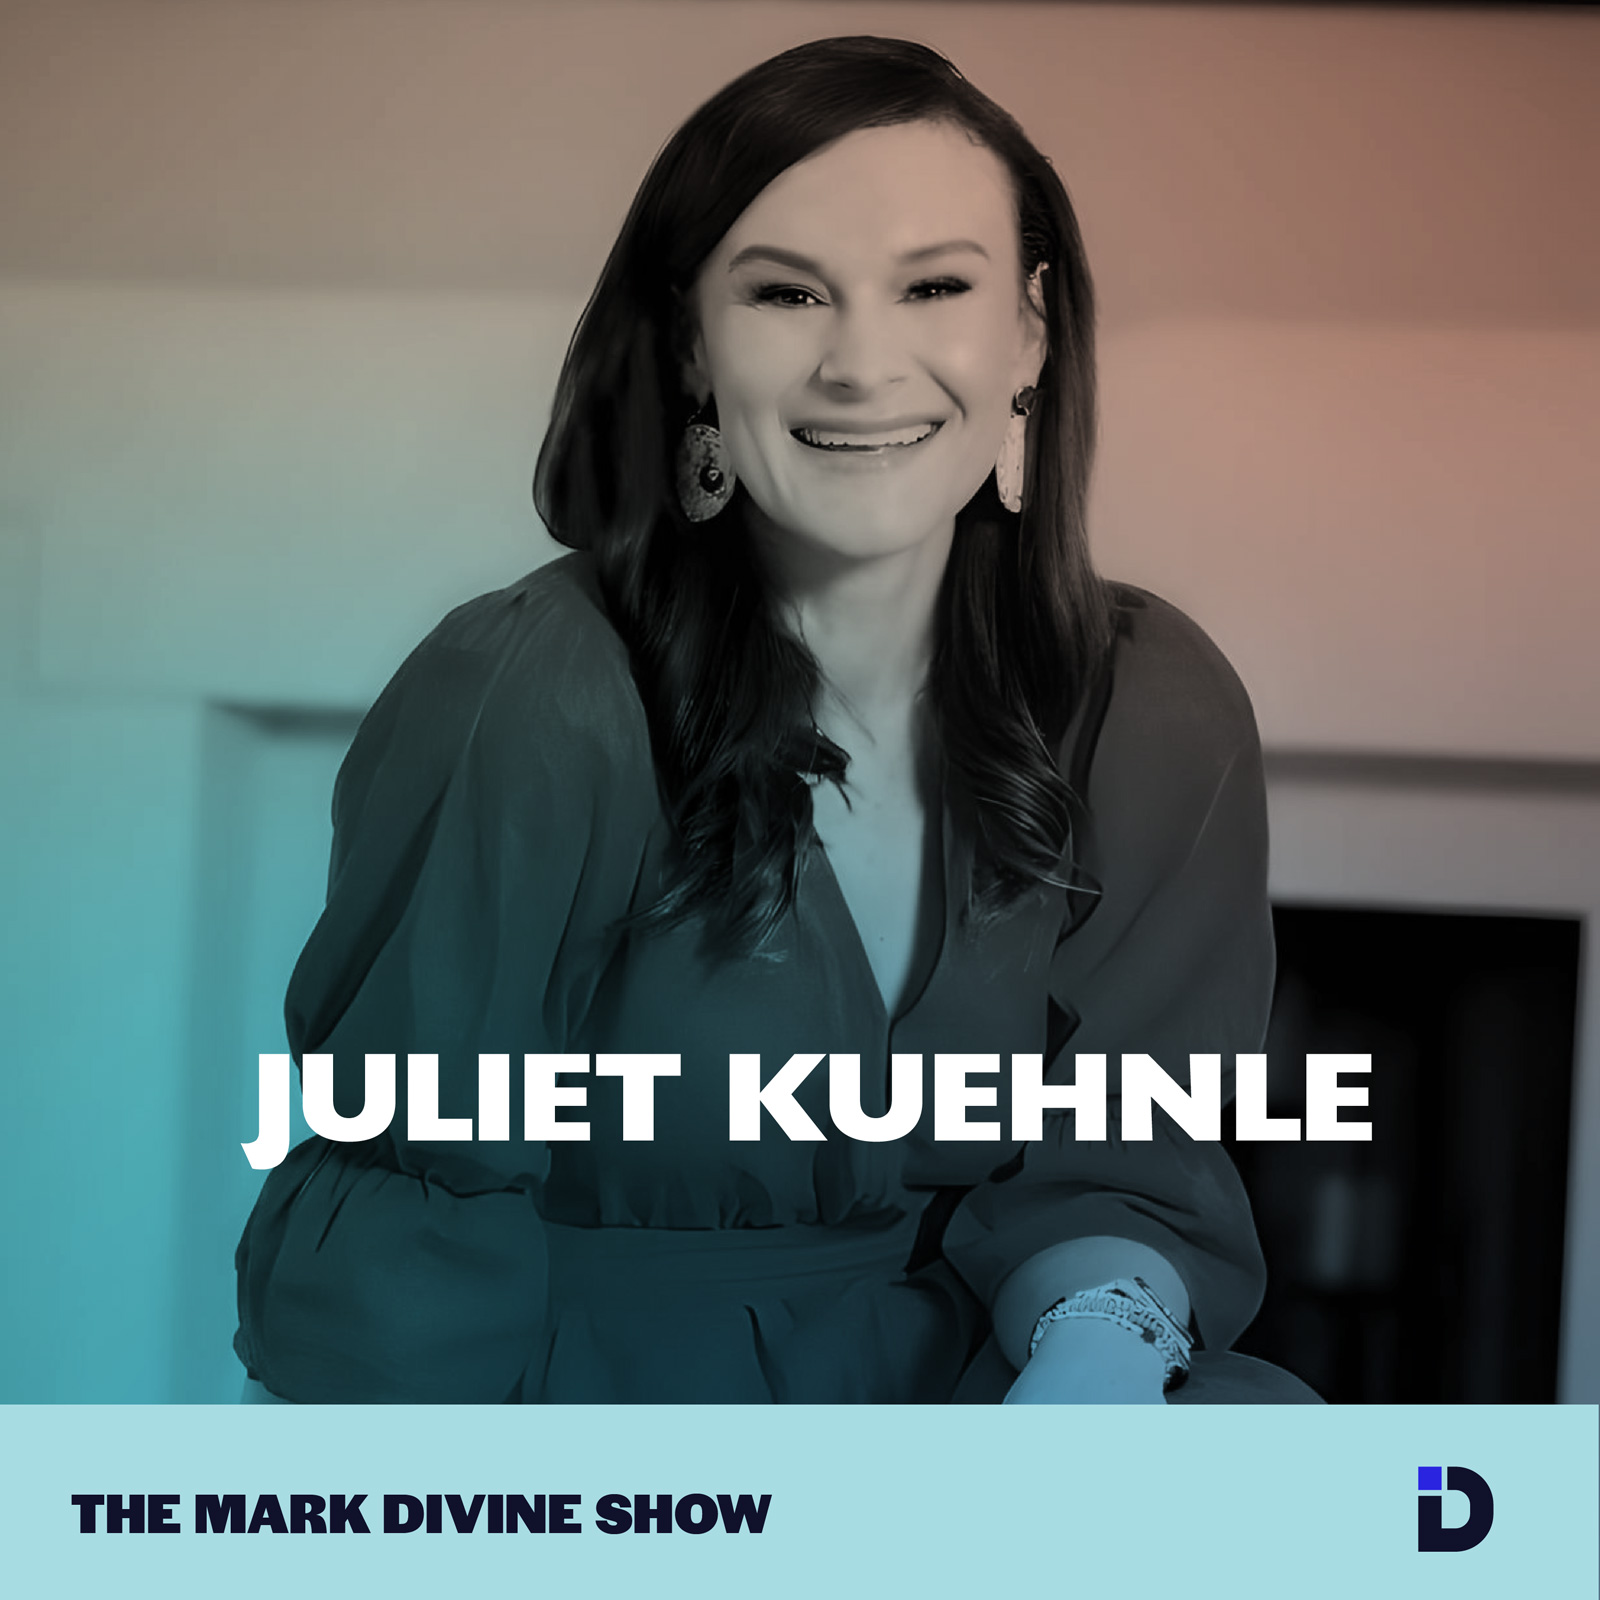 Juliet Kuehnle